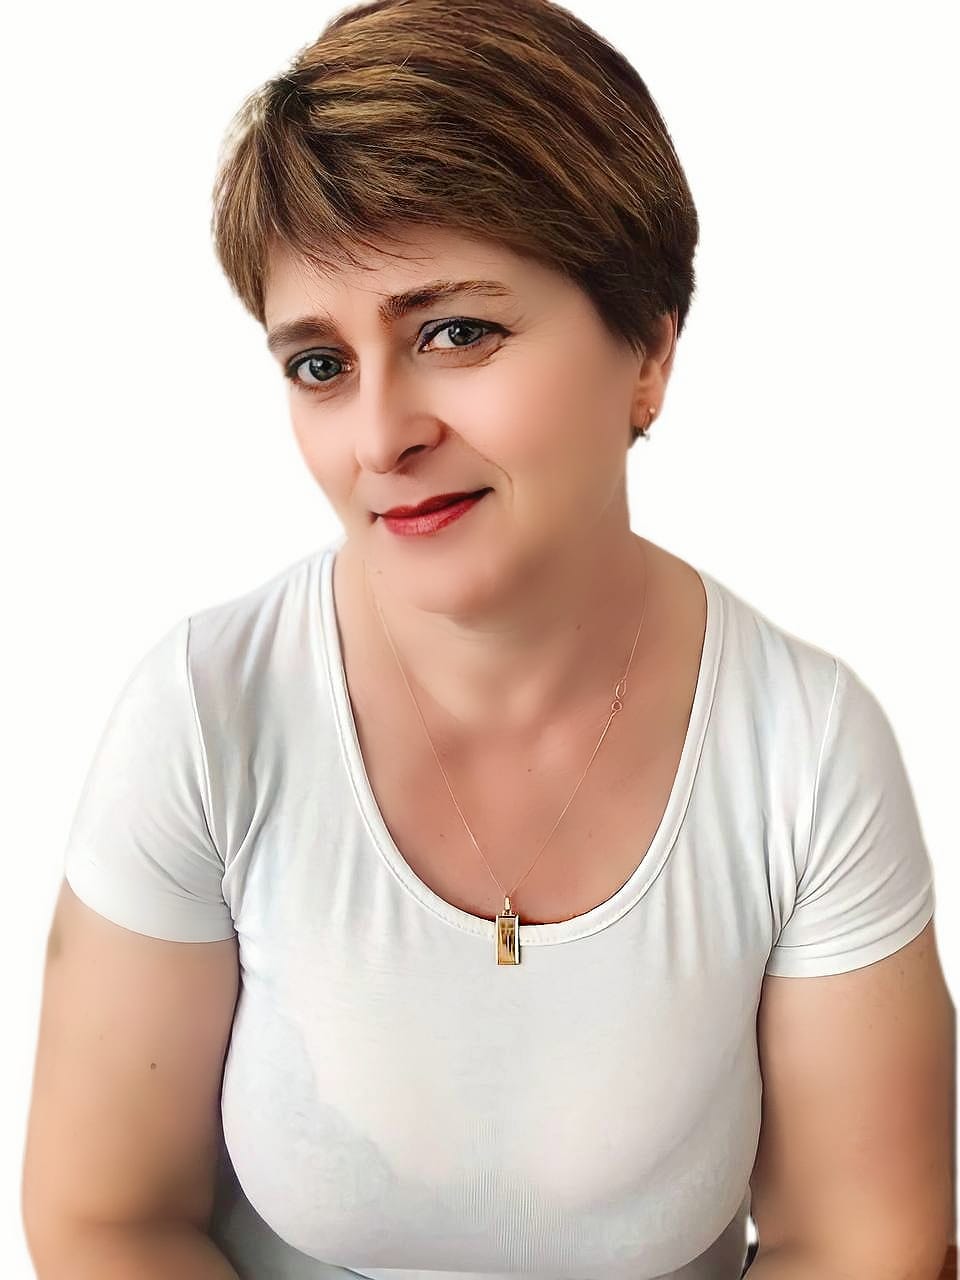 Ломтева Наталья Ивановна.